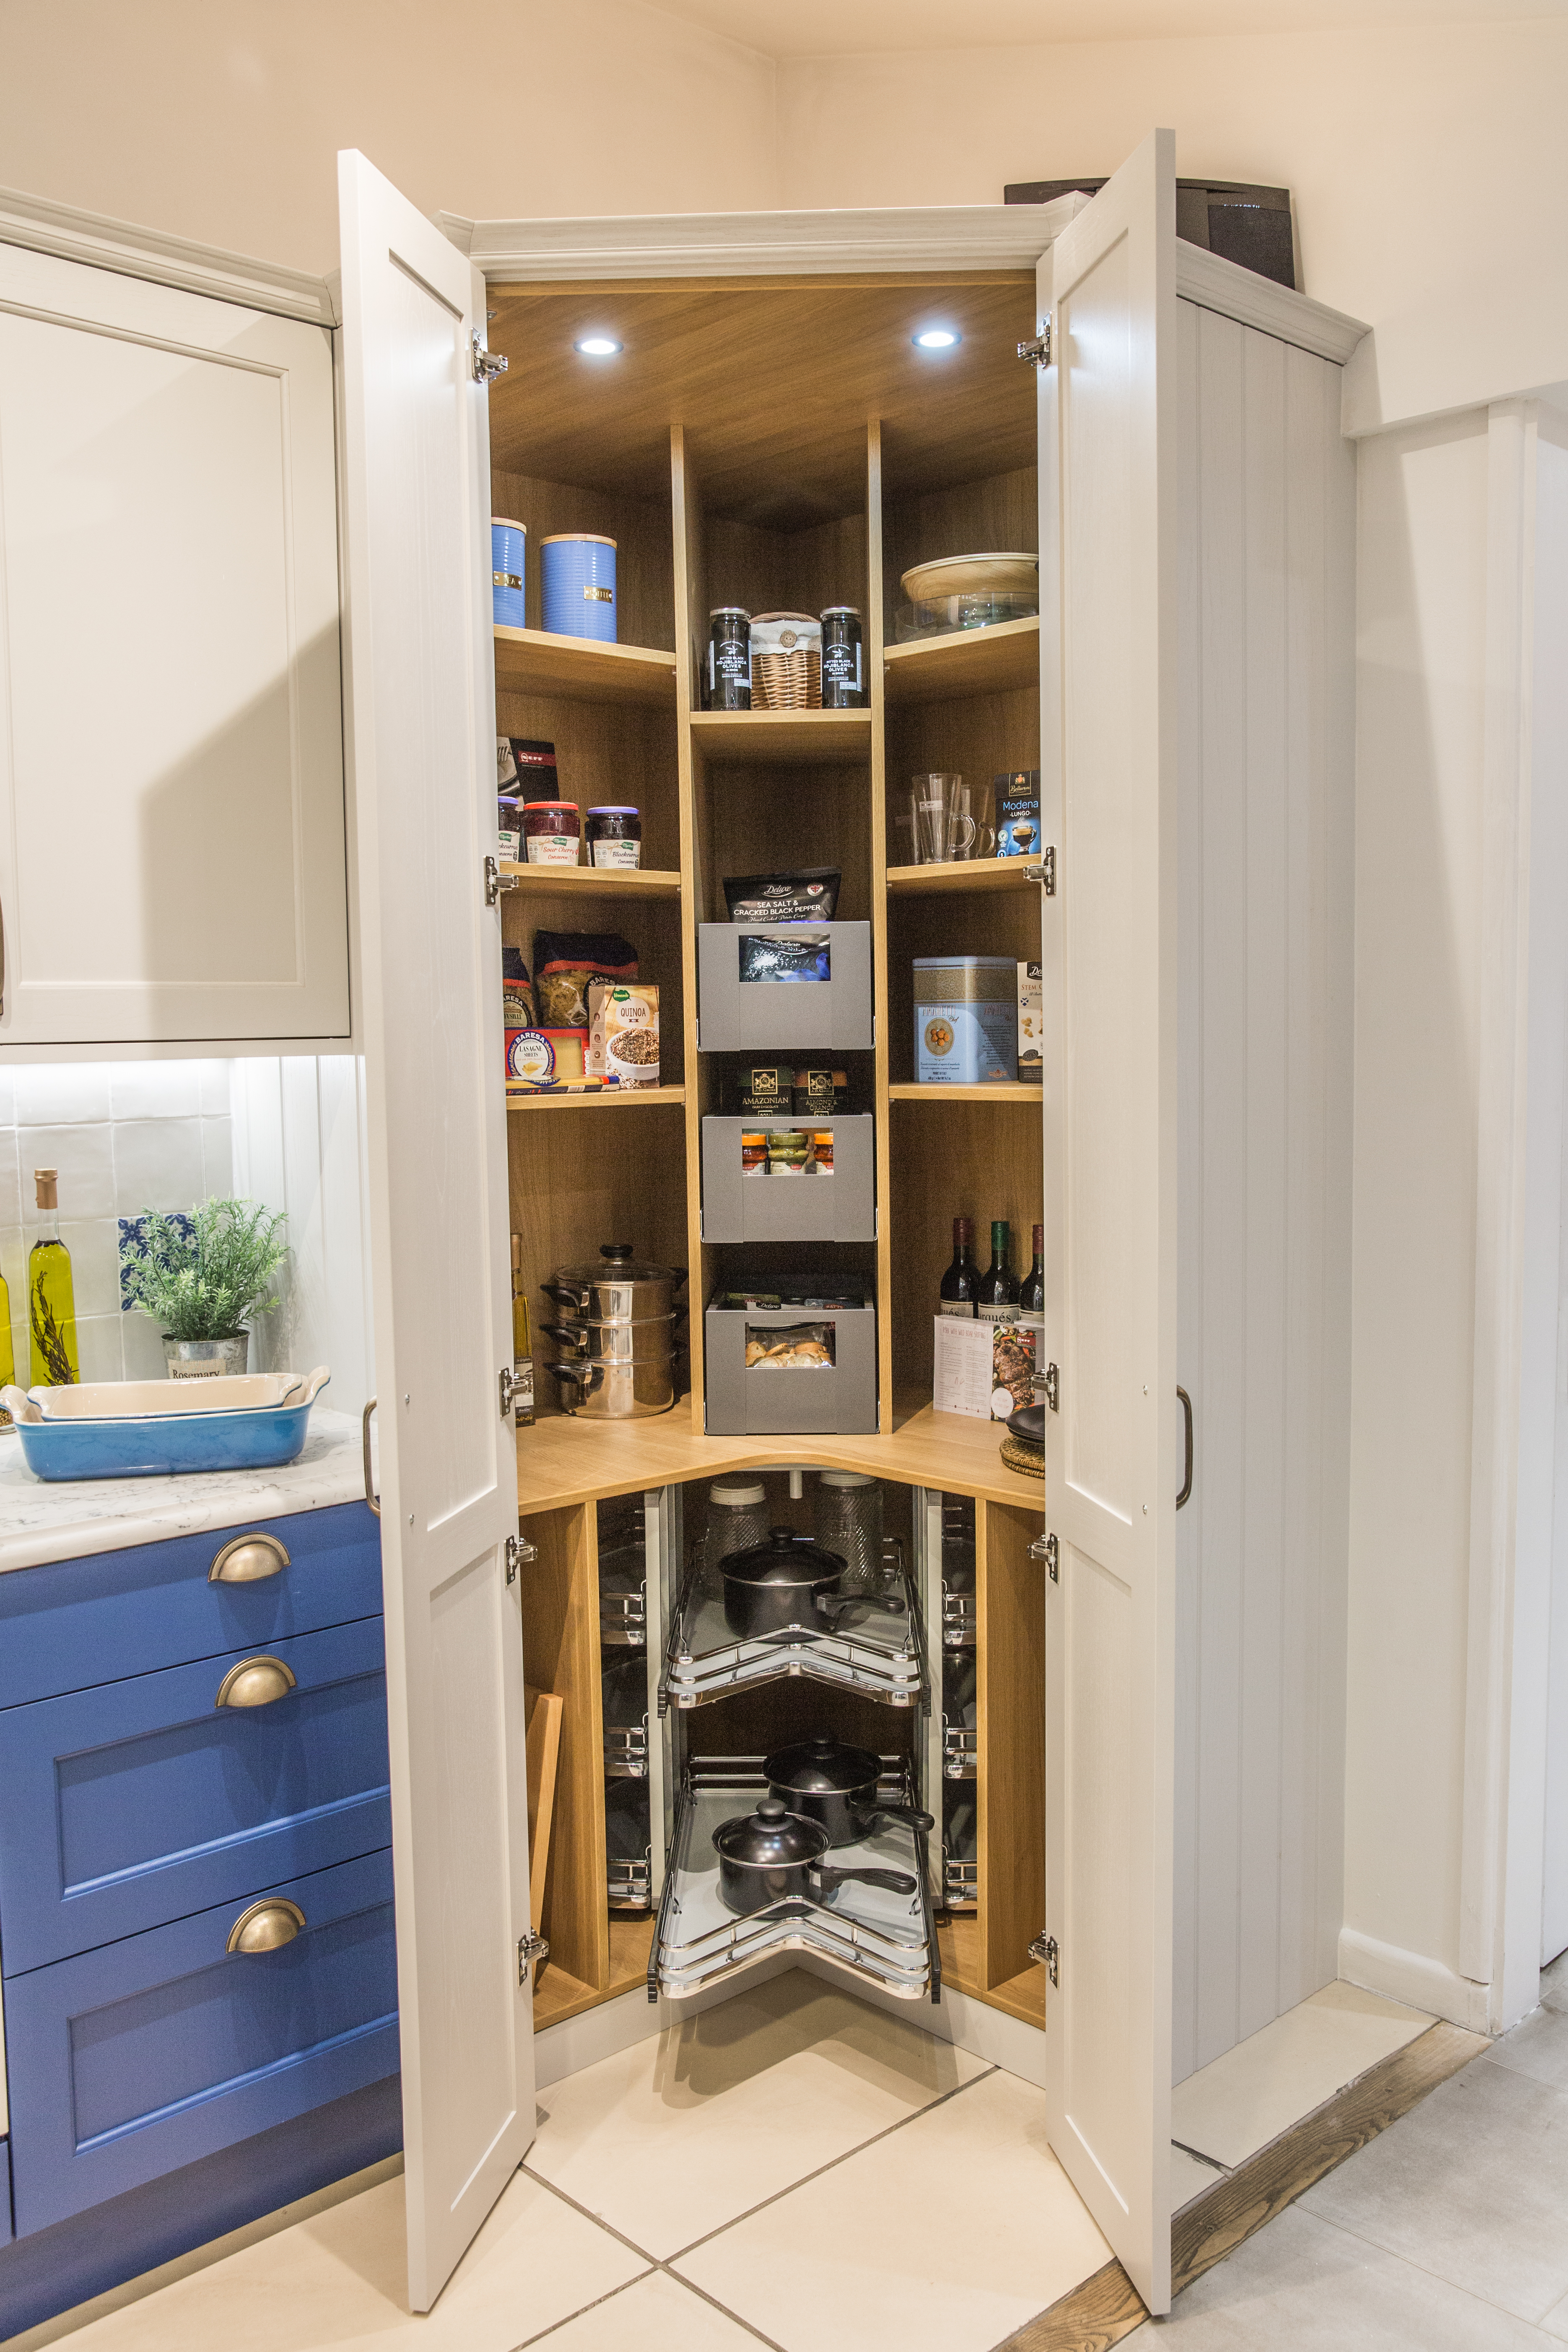 Brilliant kitchen storage ideas   My Home Extension